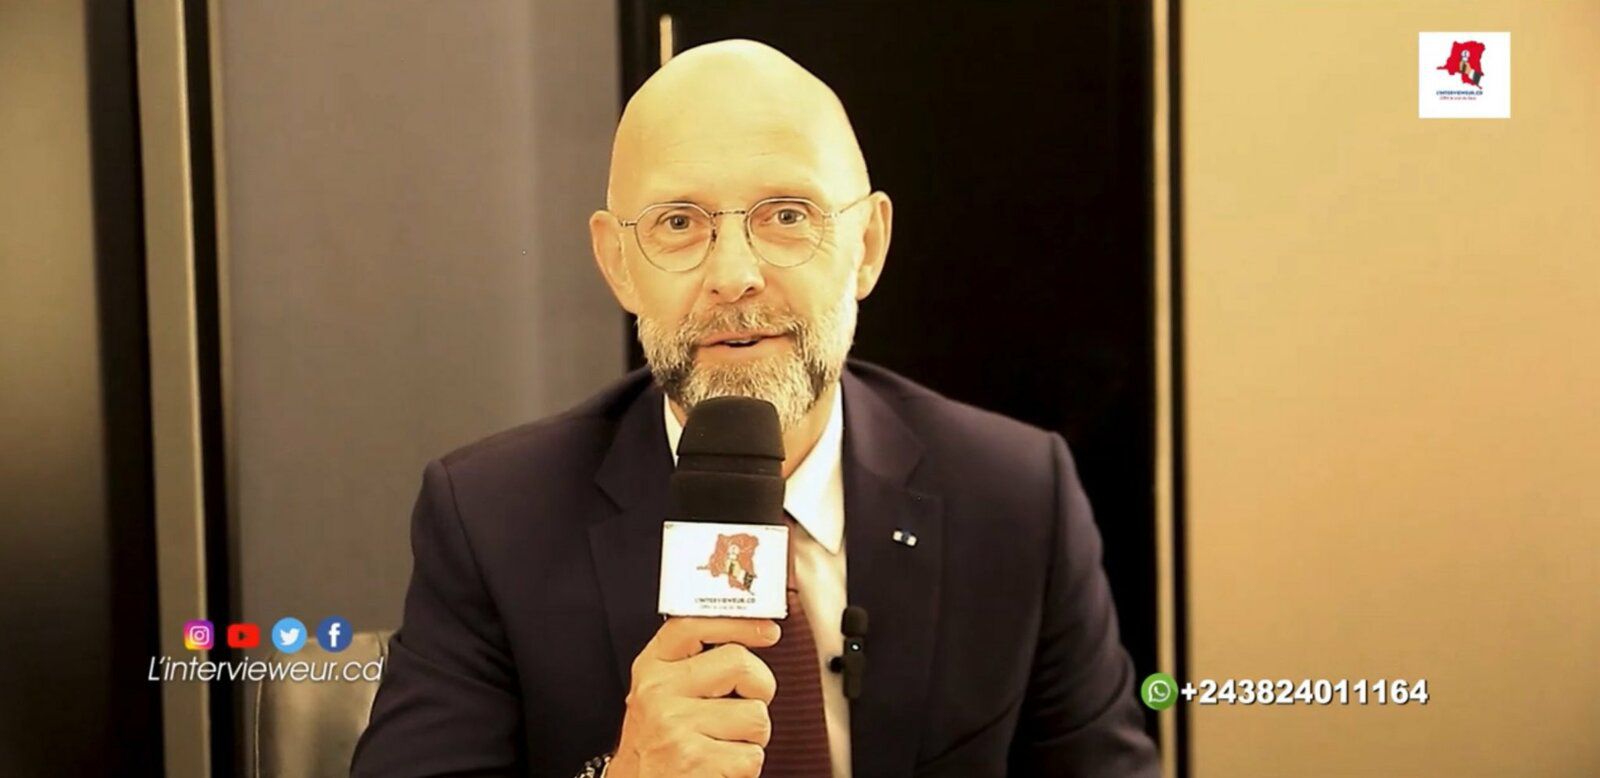 Frédéric Fougerat, Interview de Frédéric Fougerat, Frédéric Fougerat à Kinshasa, 